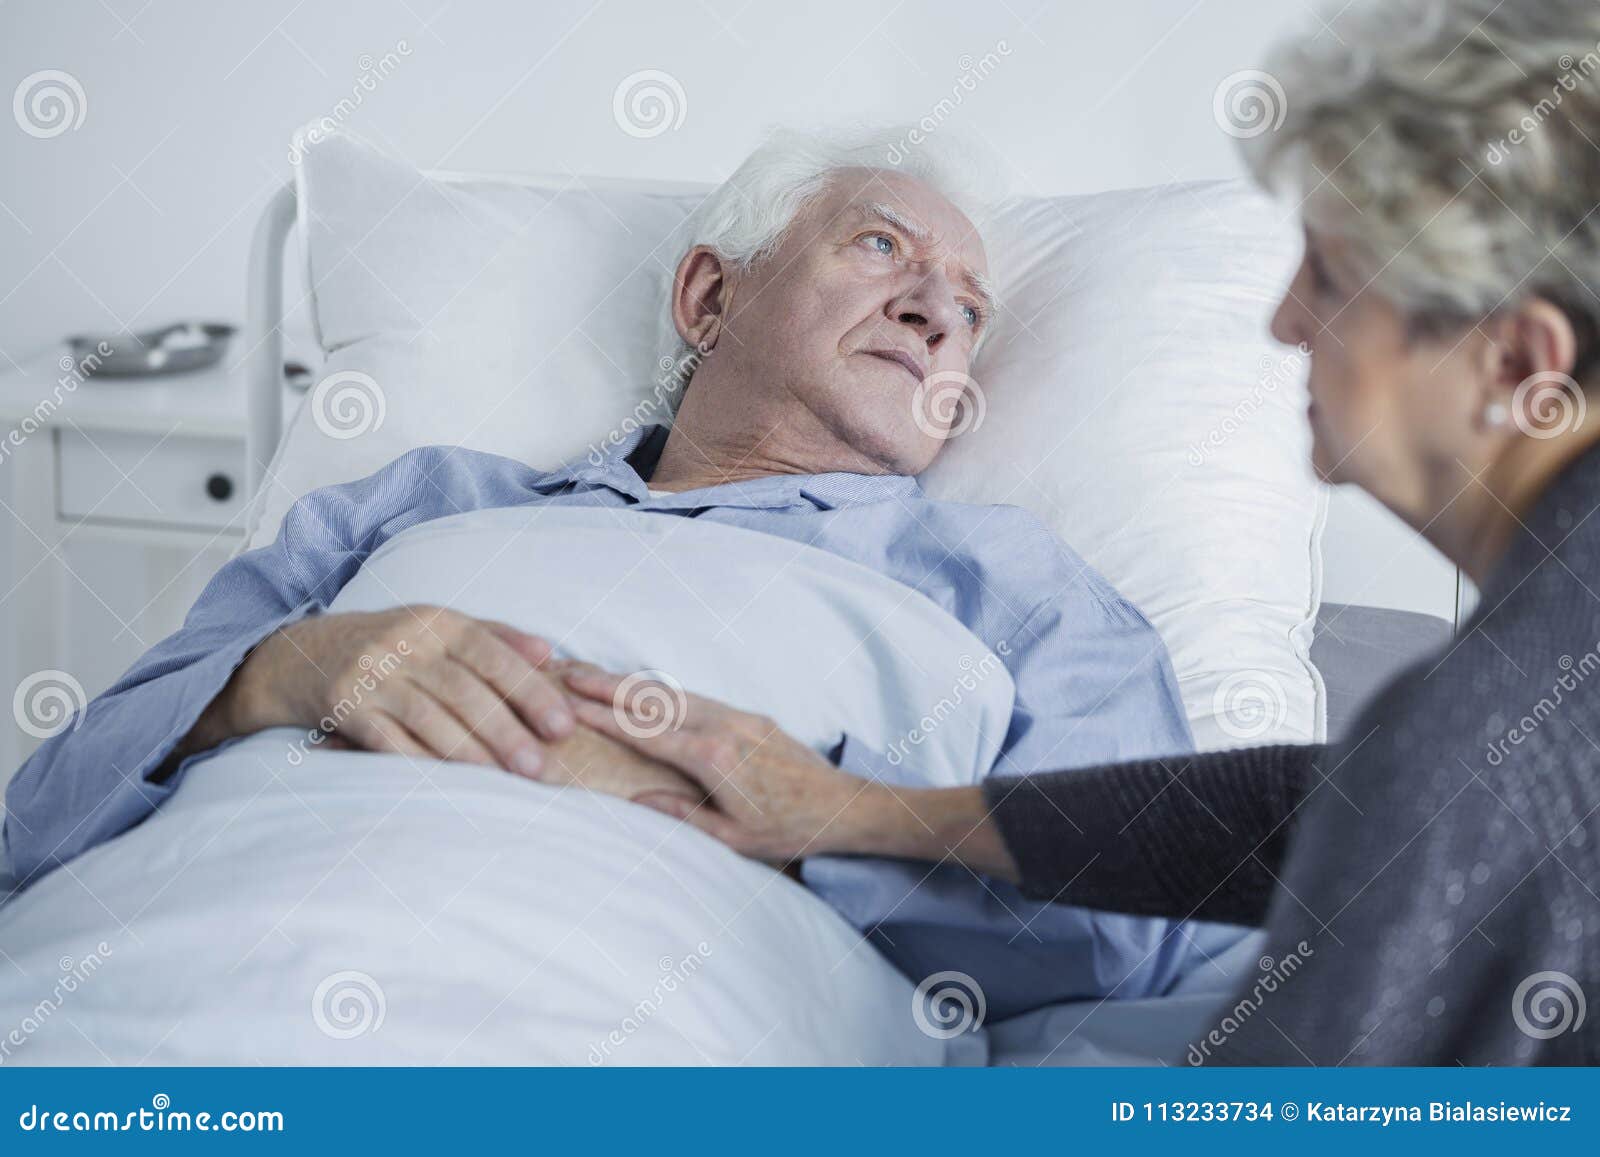 sad elders at hospital